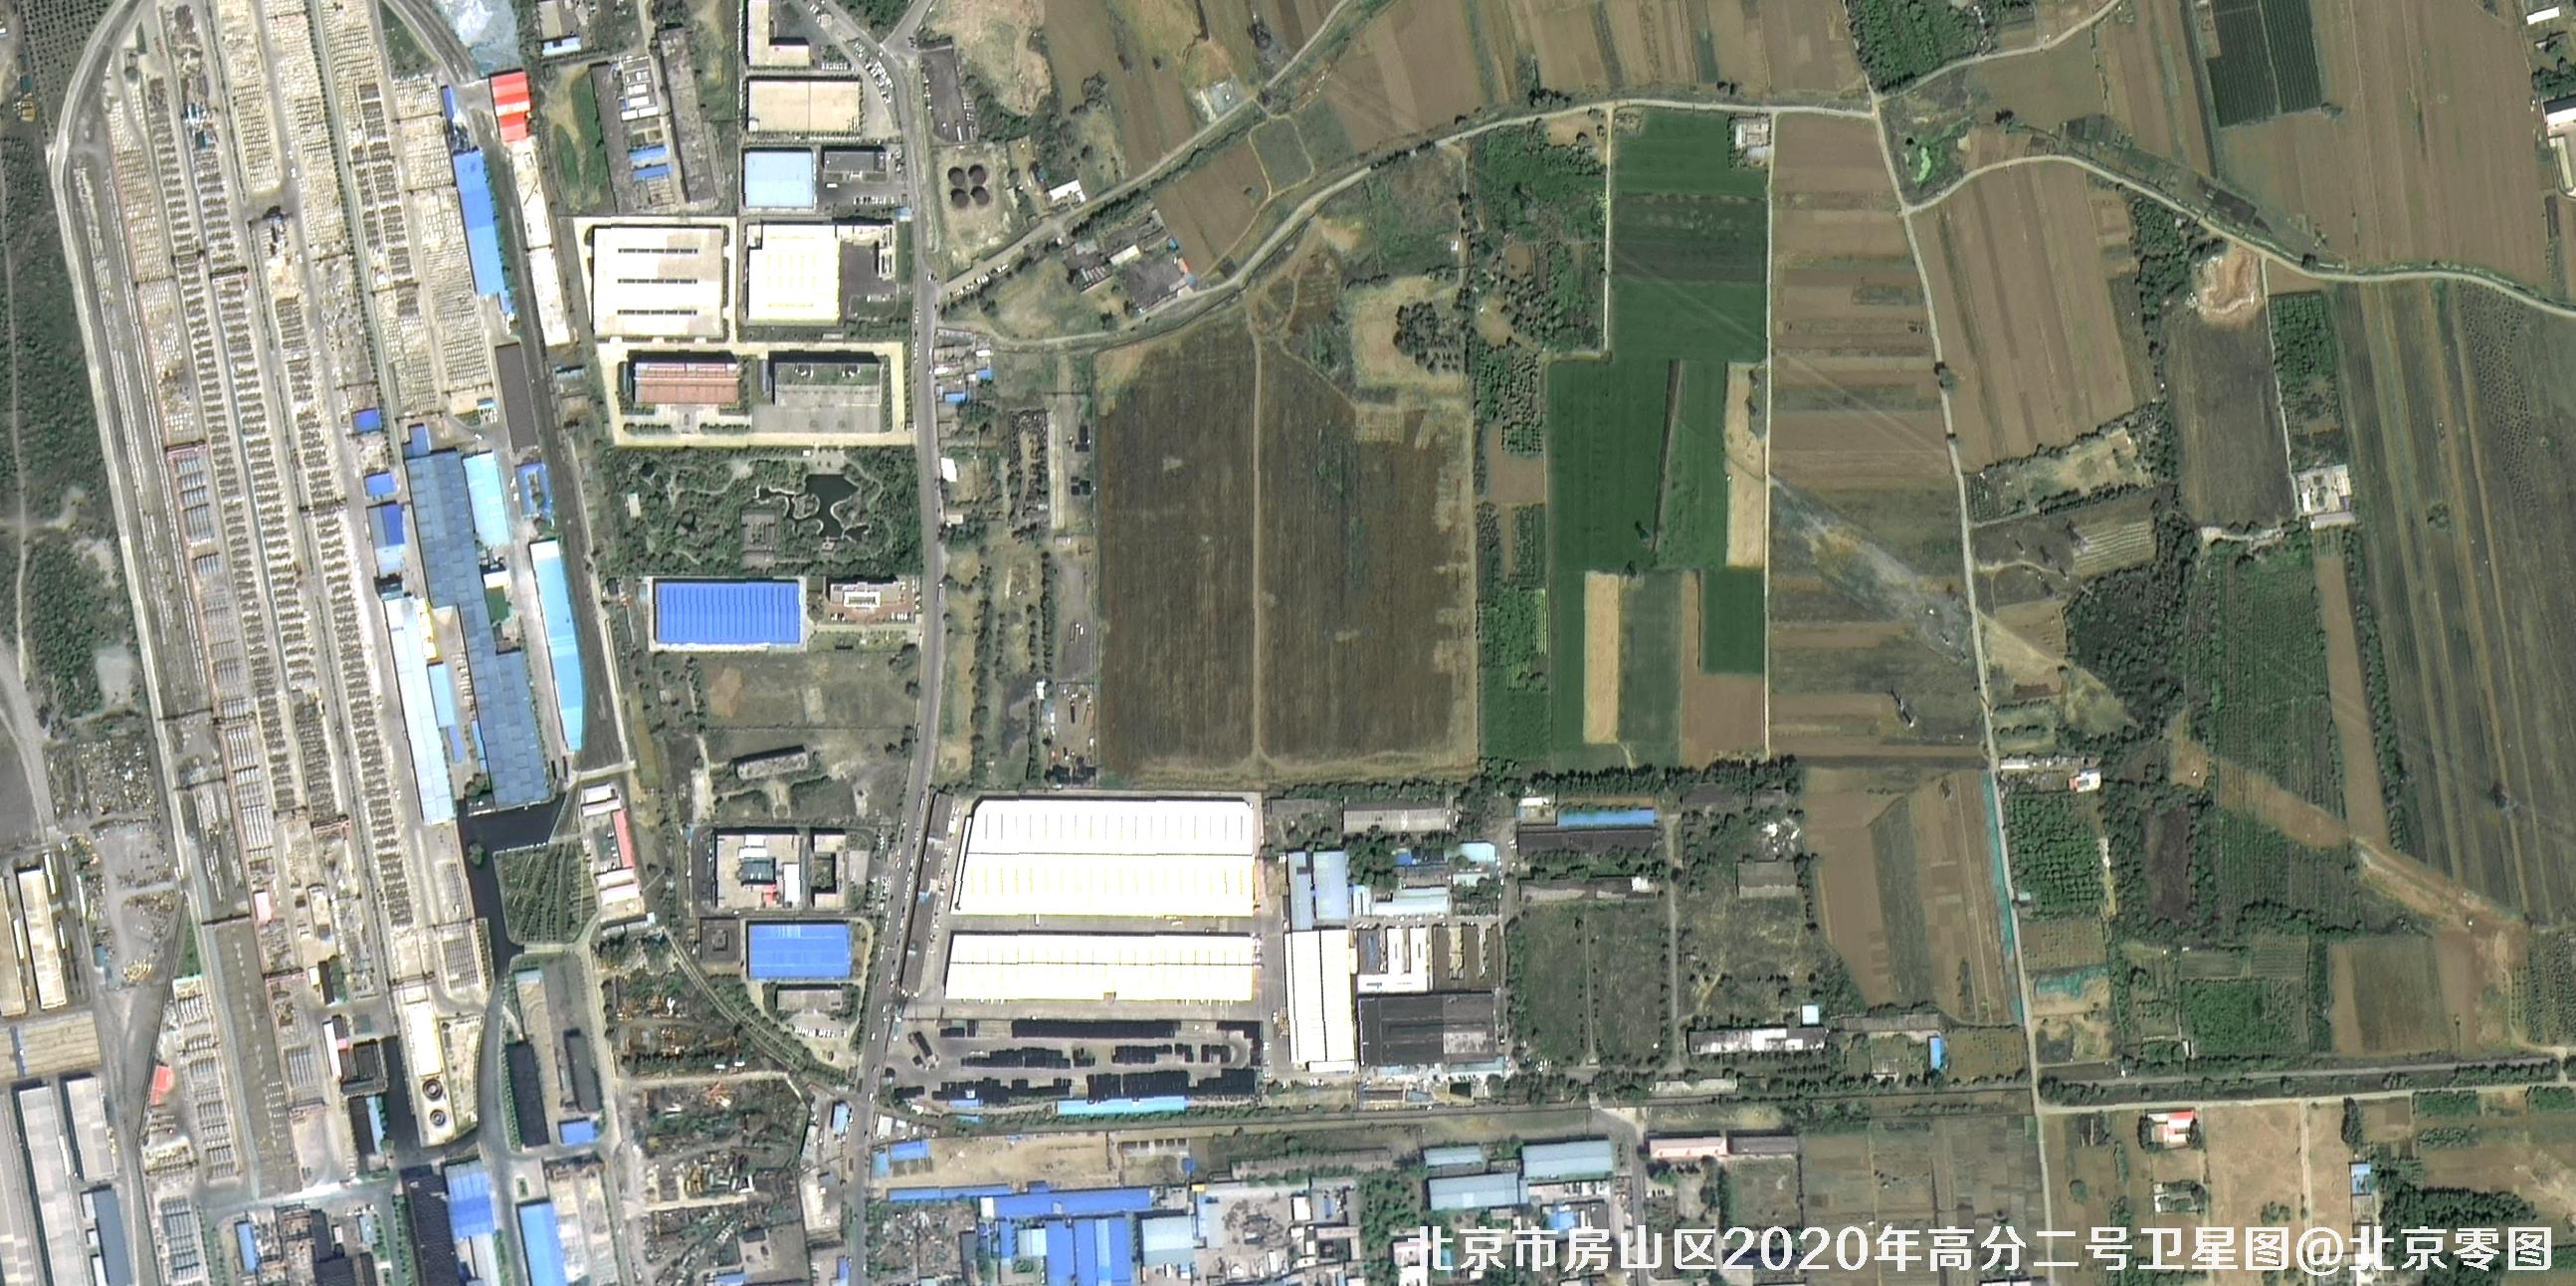 国产0.8米卫星拍摄的高清卫星图像